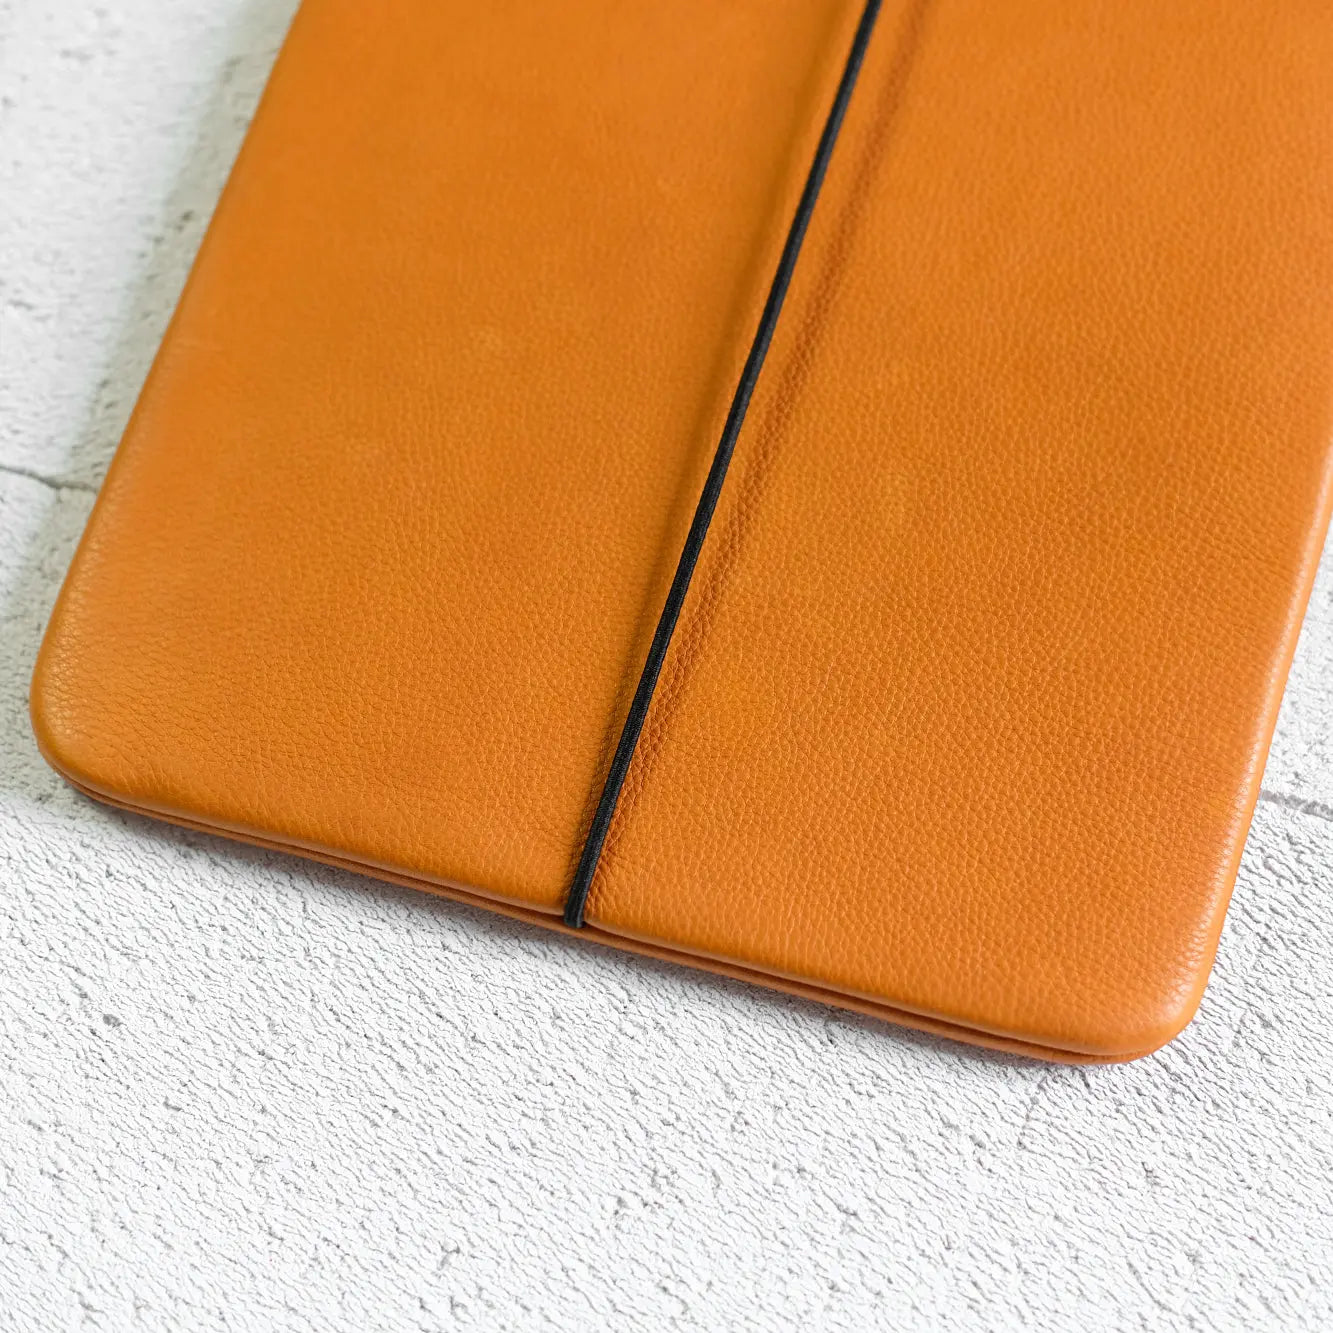 iPadhülle aus orangefarbenem Leder mit leichter Narbung und schwarzem Verschlussgummi